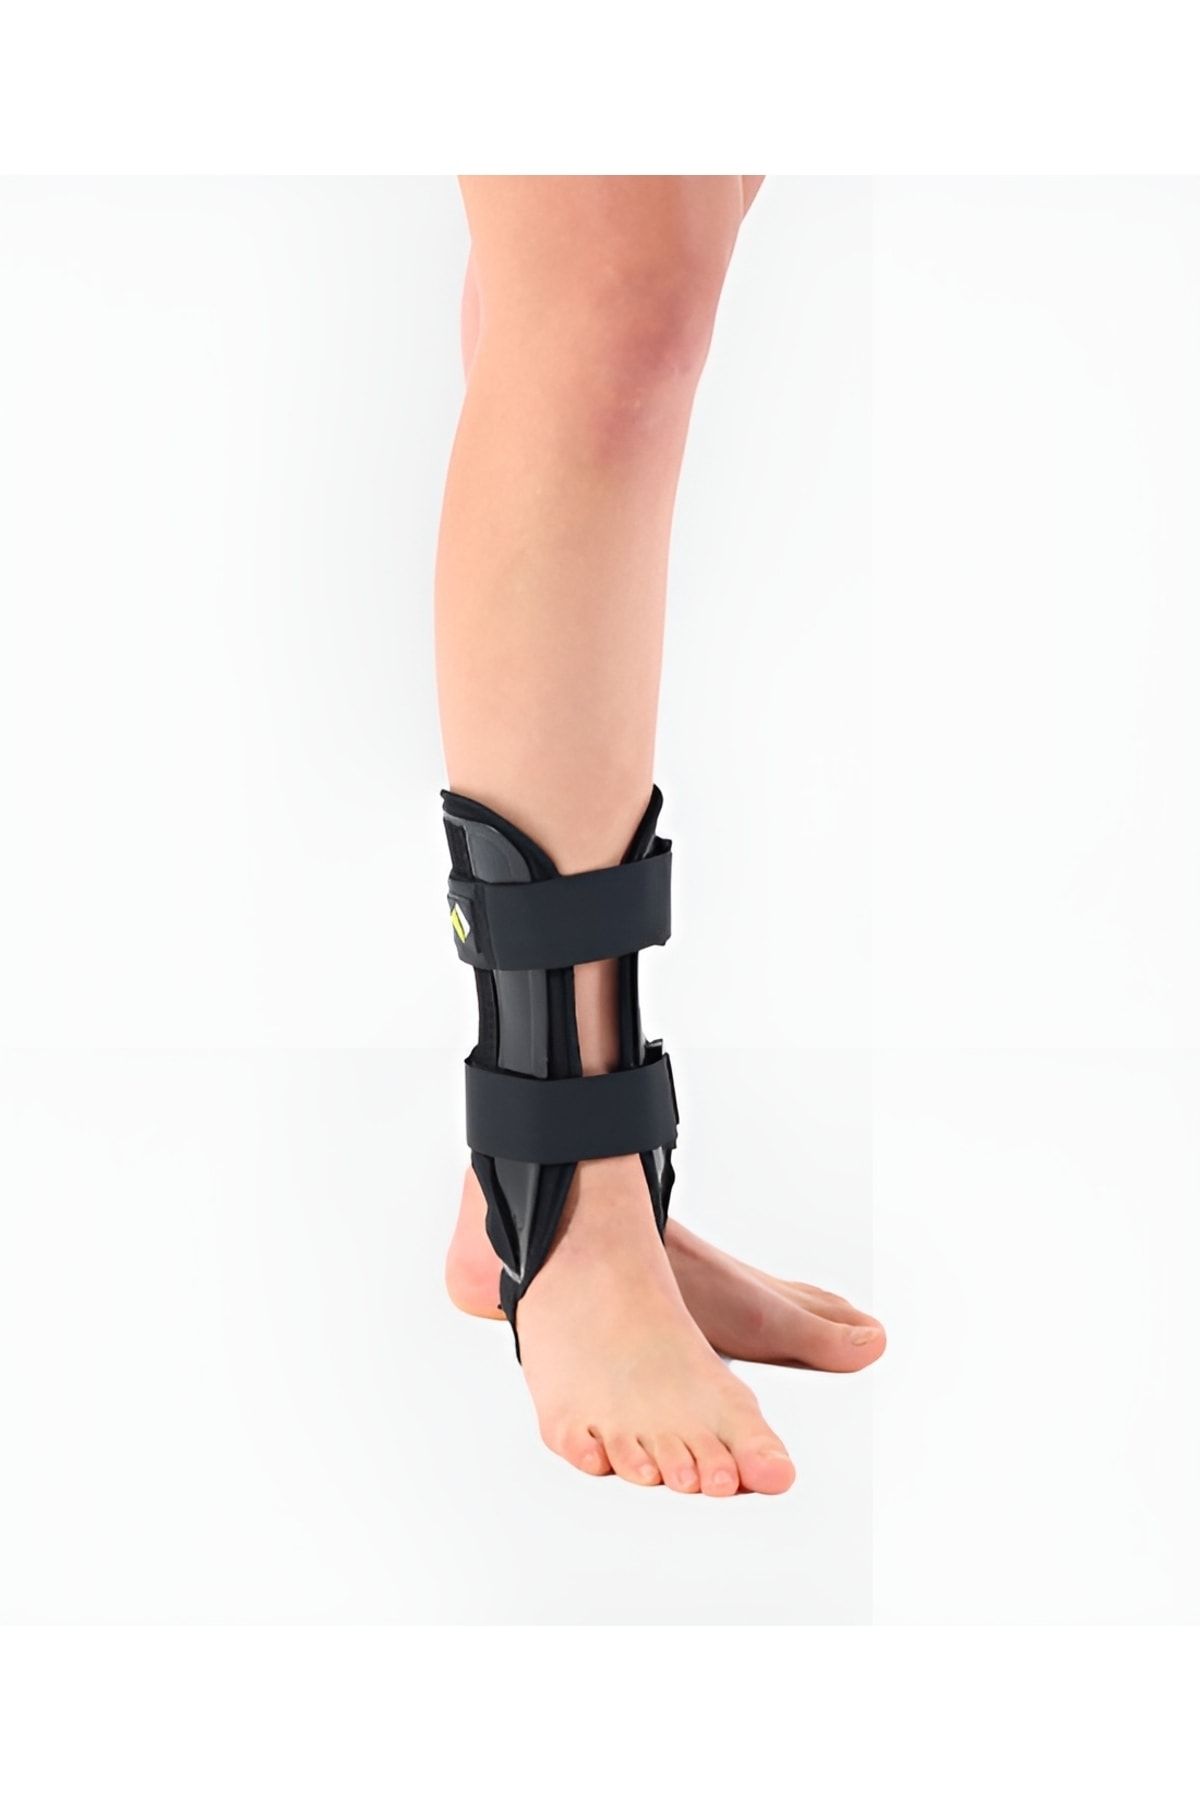 Supportline Medikal Ortopedik Koruyucu Pedli Ayak Bilekliği Bağ Burkulma Kırık Yaralanmaları-intermed